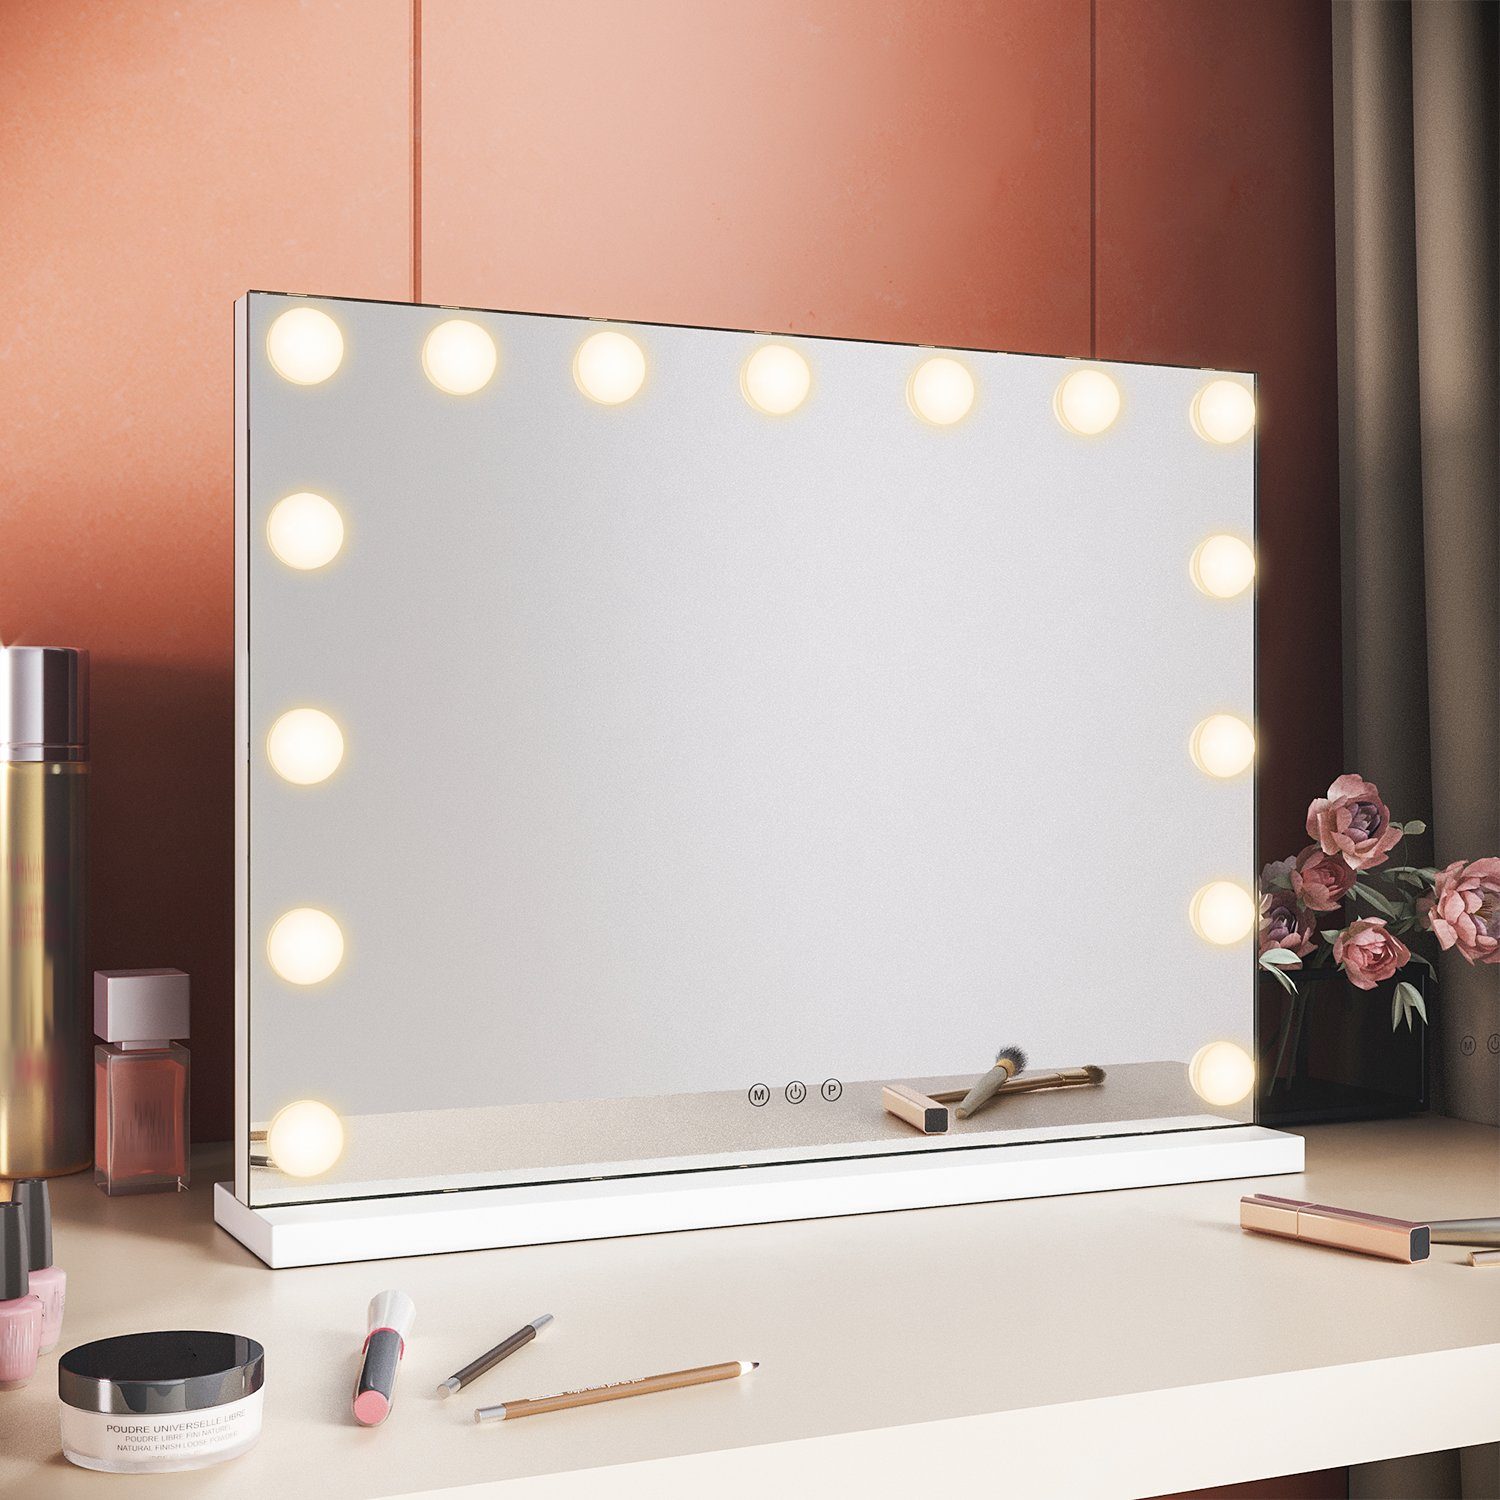 https://i.otto.de/i/otto/b63bafee-9eef-480d-80ae-6ea4f977d555/sonni-schminkspiegel-schminkspiegel-mit-beleuchtung-make-up-hollywood-spiegel-mit-led-3-farbe-licht.jpg?$formatz$